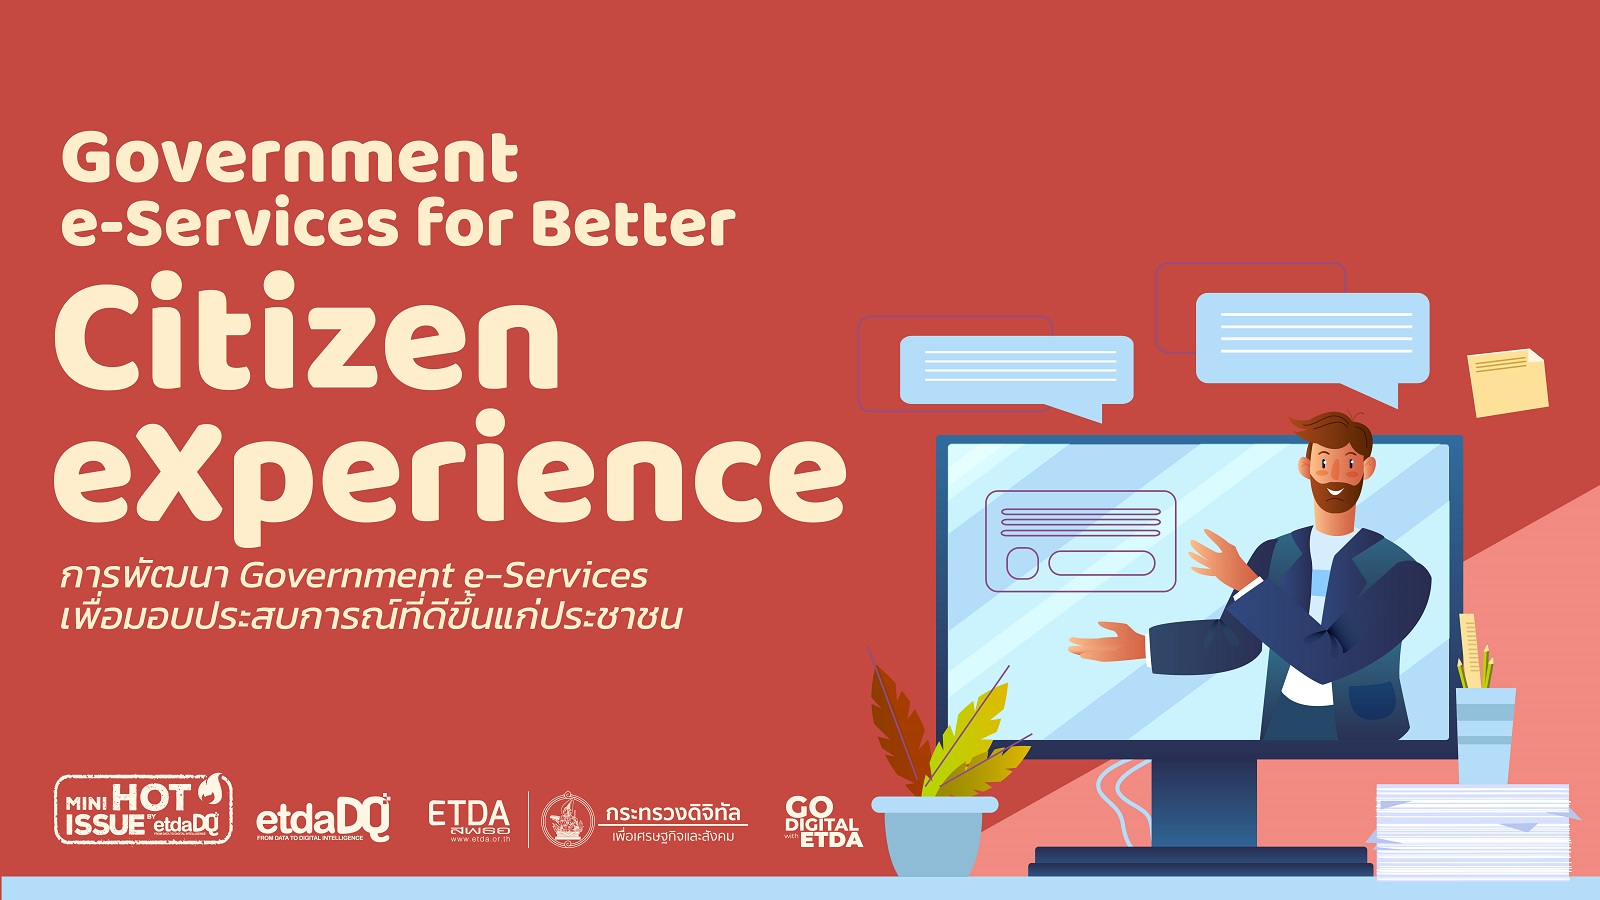 การพัฒนา Government e-Services เพื่อมอบประสบการณ์ที่ดีขึ้นแก่ประชาชน